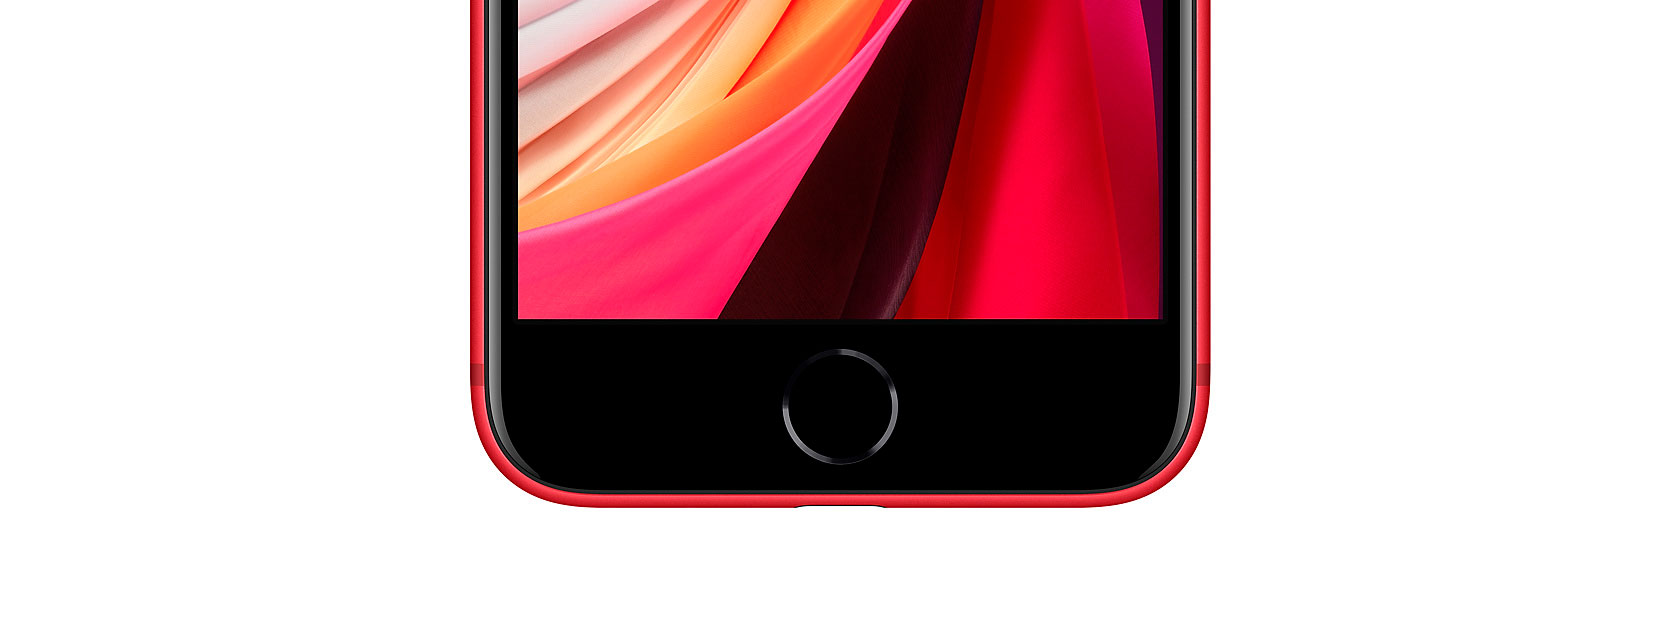 iPhone SE 2020 é oficial, com ecrã de 4,7 polegadas por 499€ - Mundo Smart - mundosmart